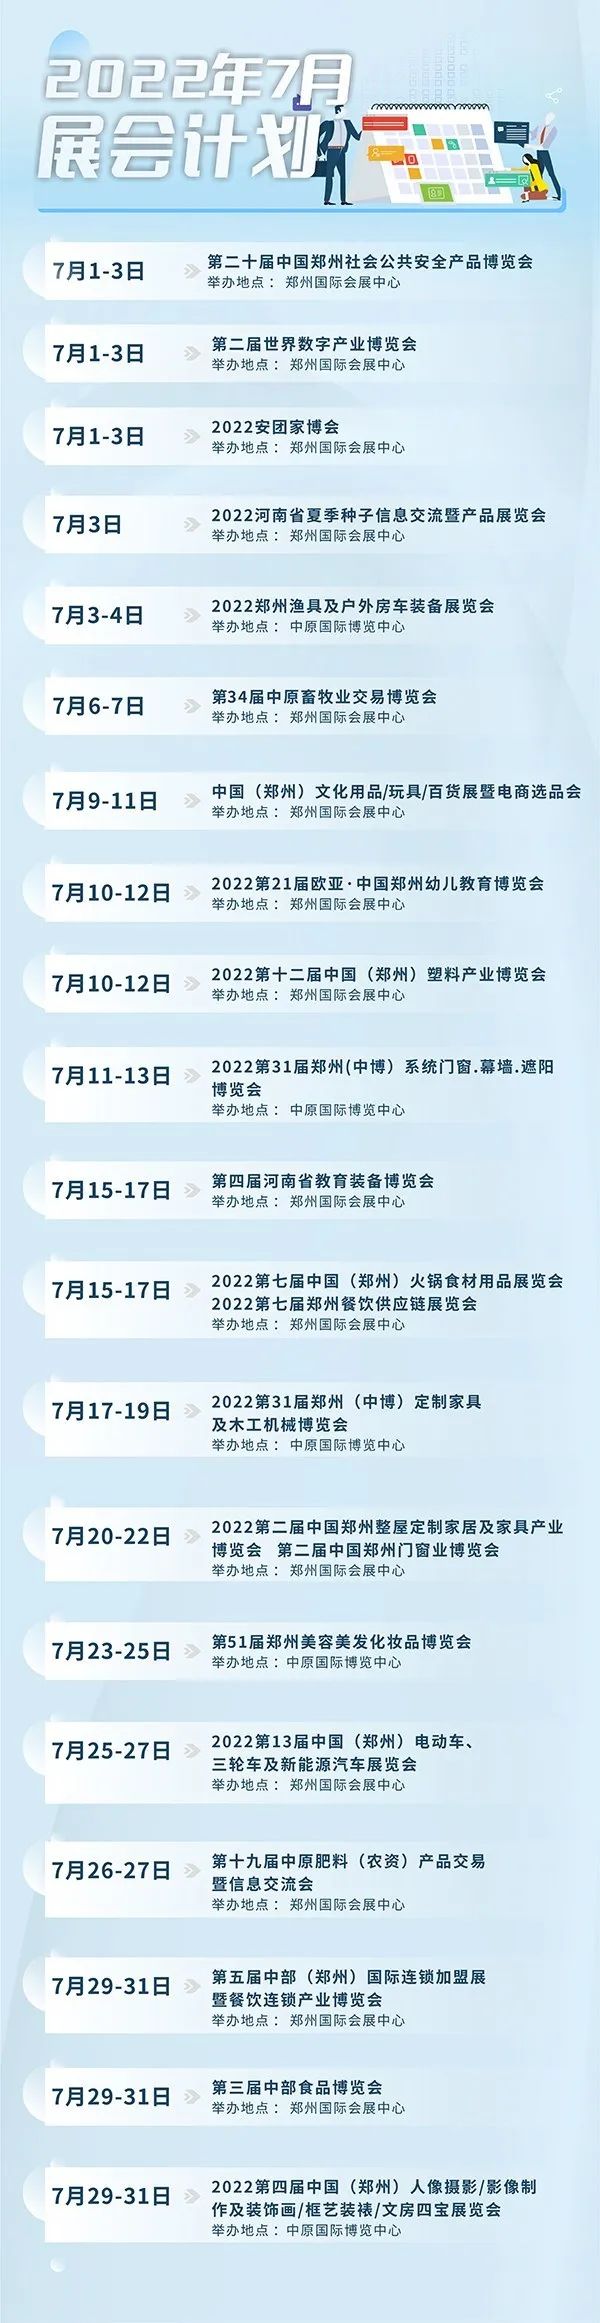 7月郑州将举办这些会展，涉及食品、家装等多个领域